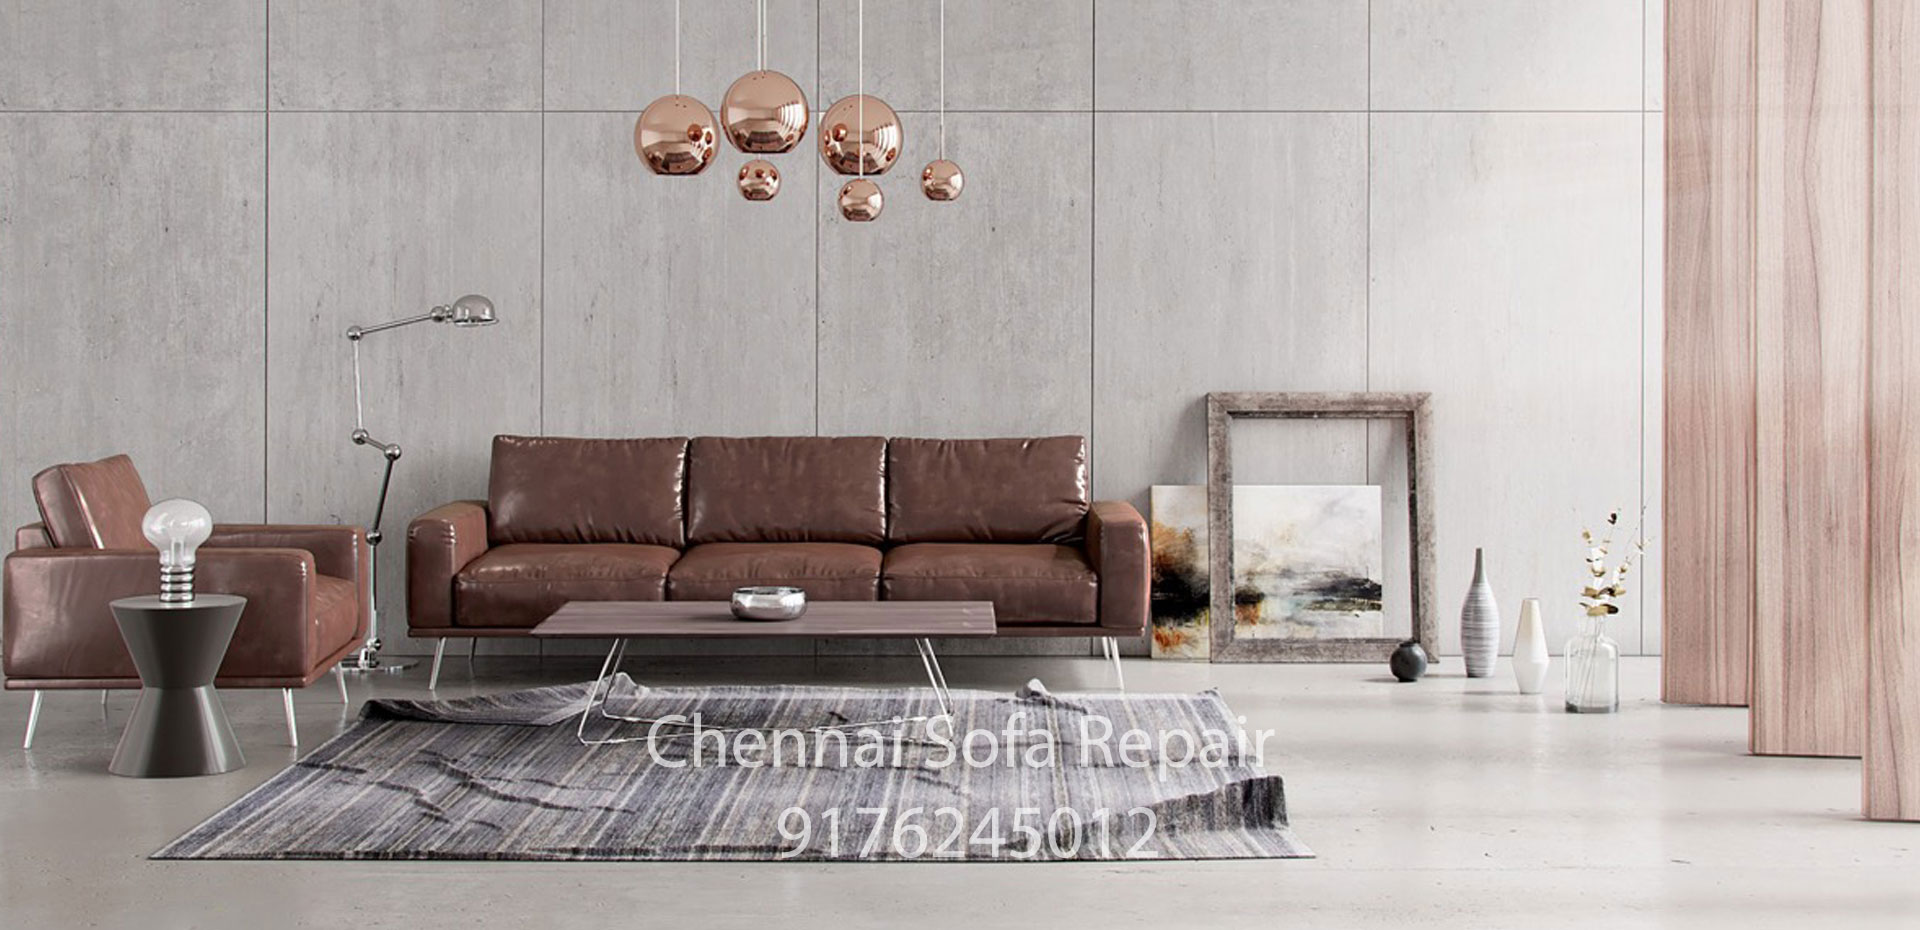 sofa renovation Adyar Chennai